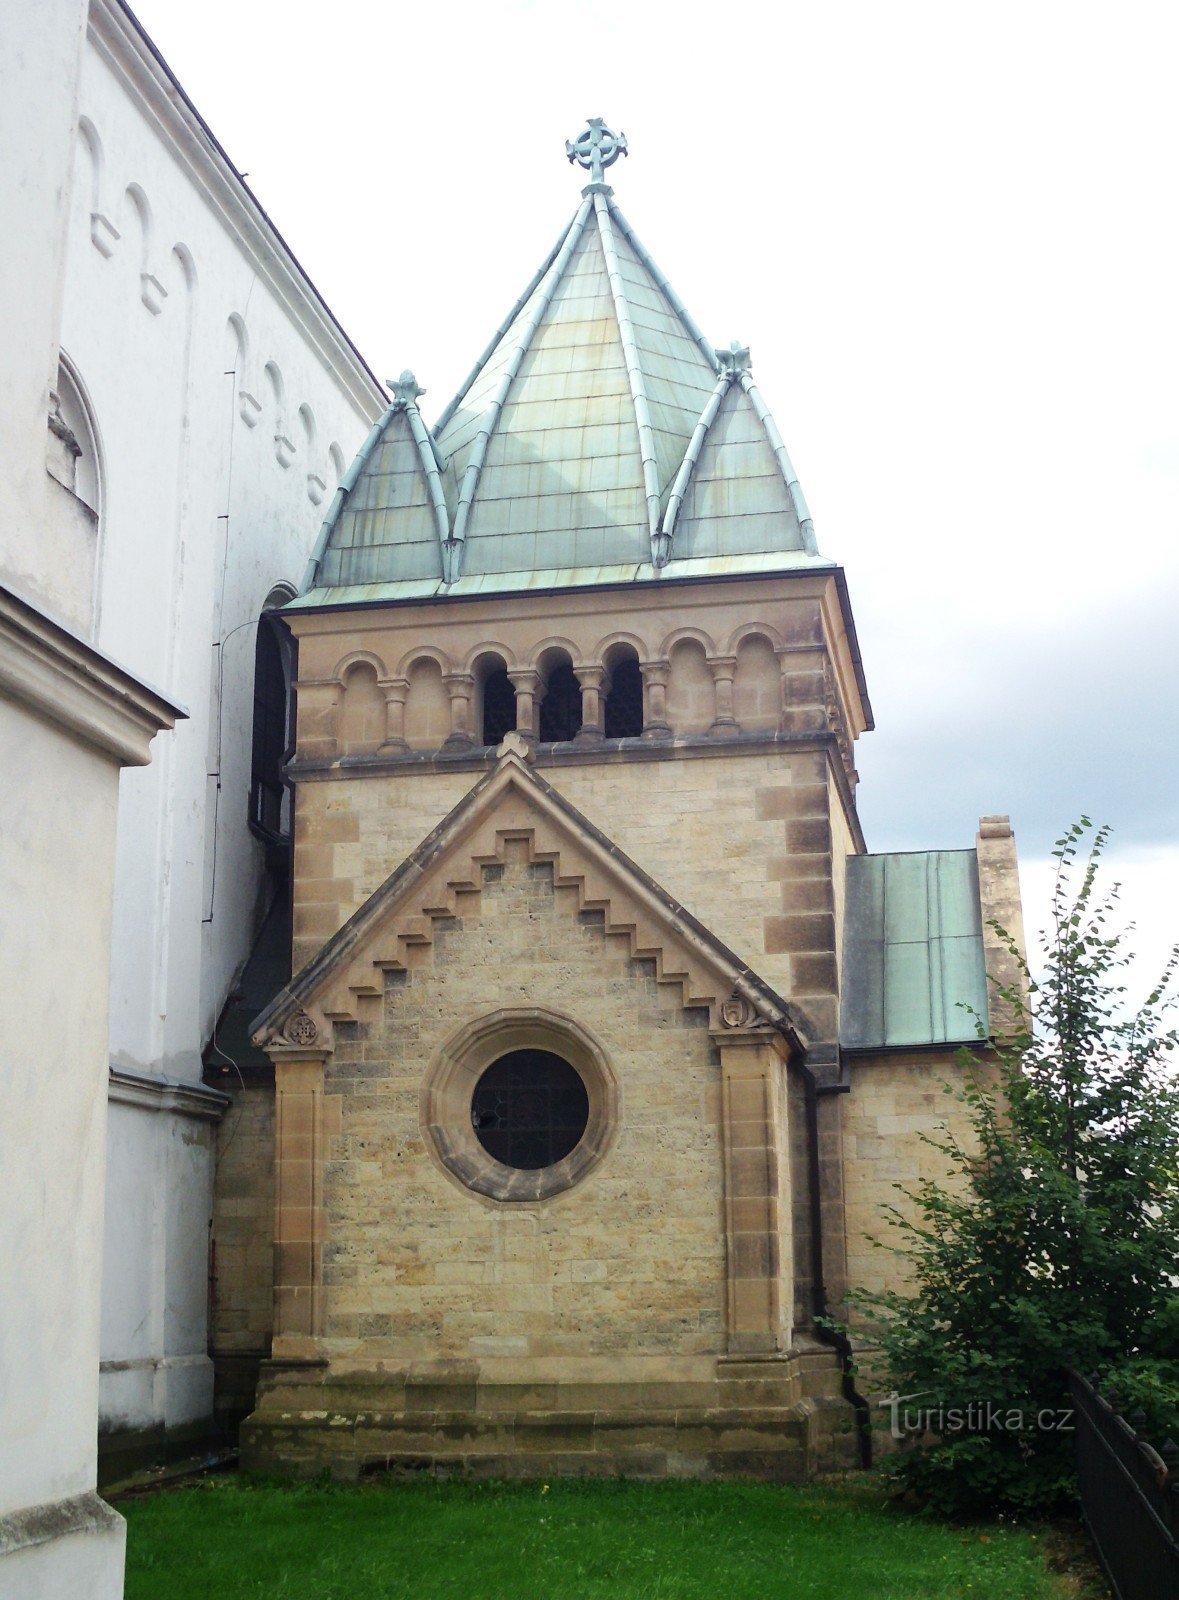 Čakovice (Prag) - Crkva sv. Remigia